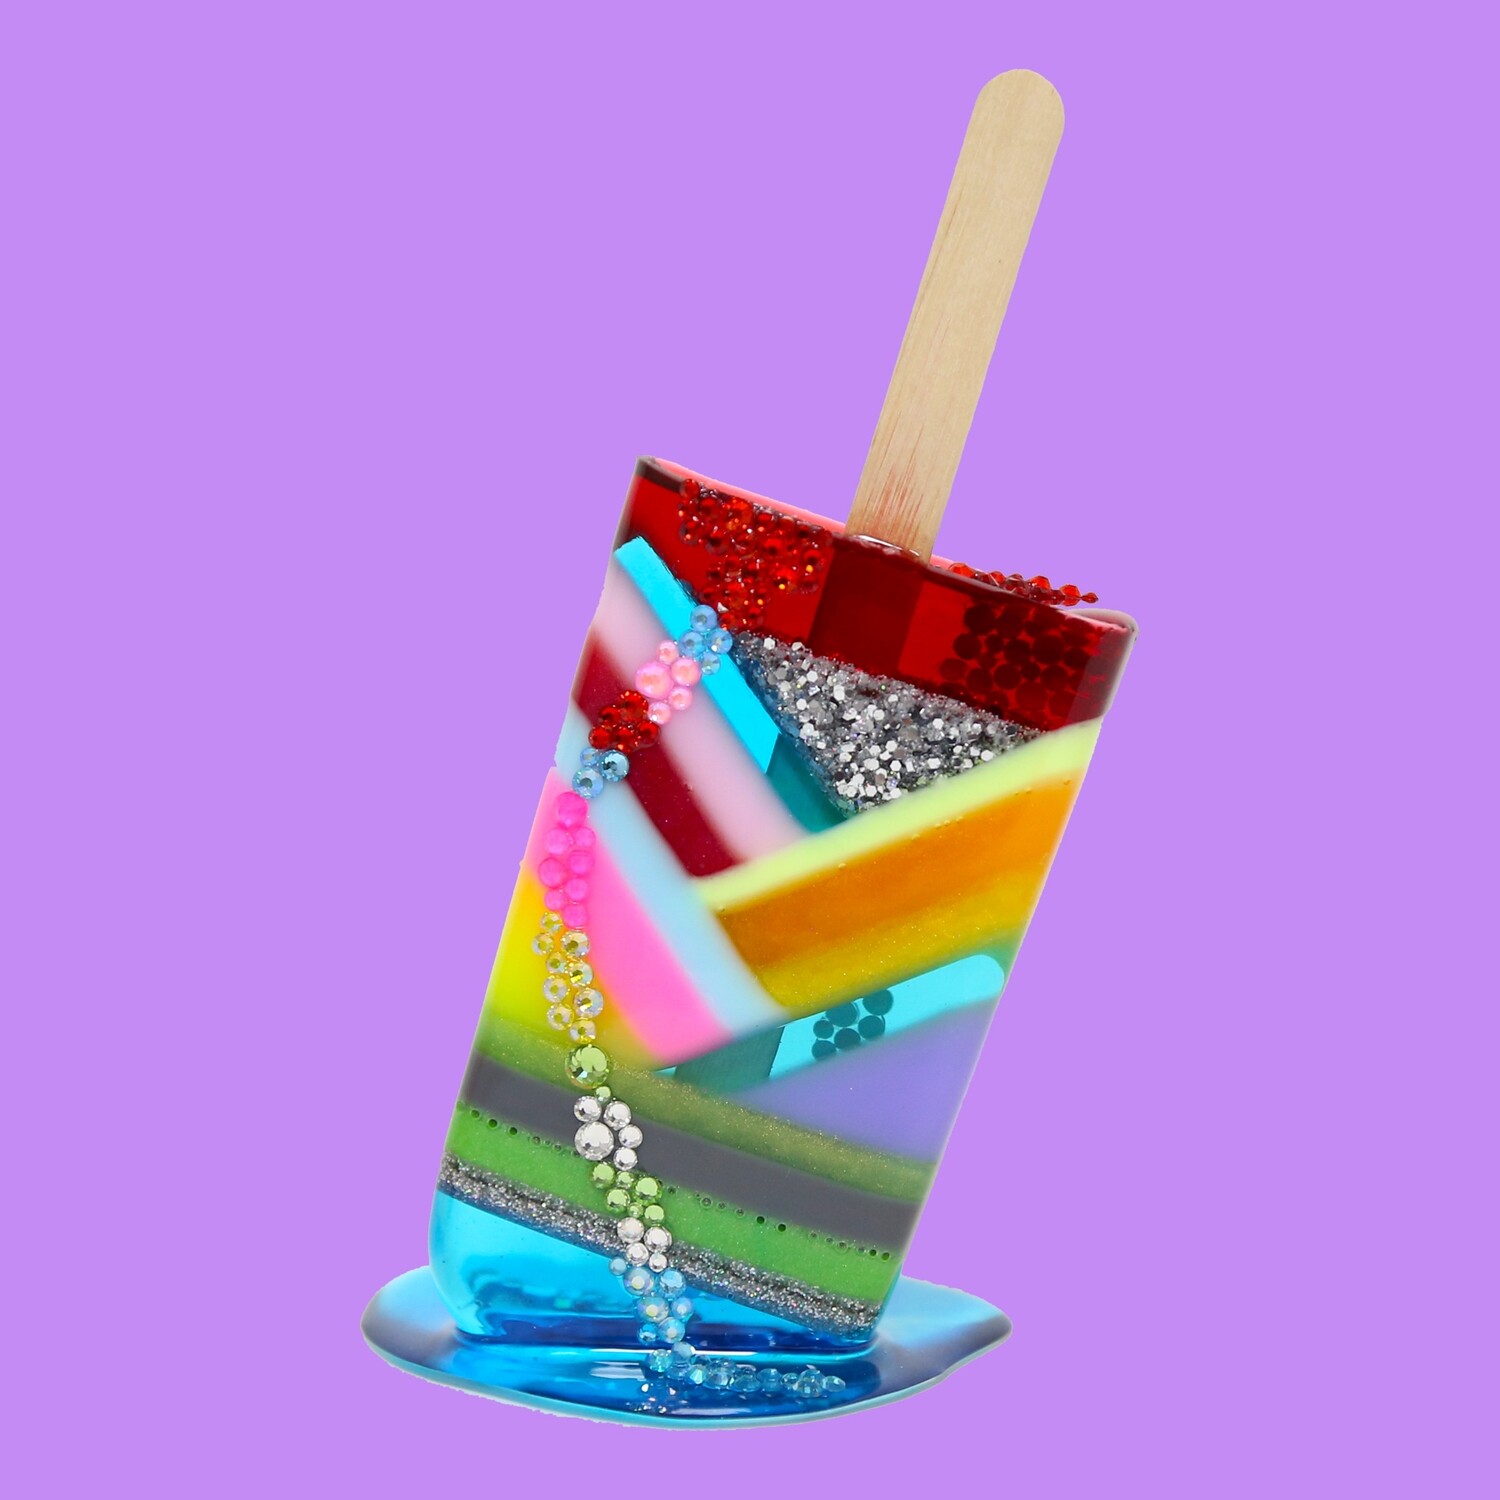 Melting Popsicle Art - Pop Star